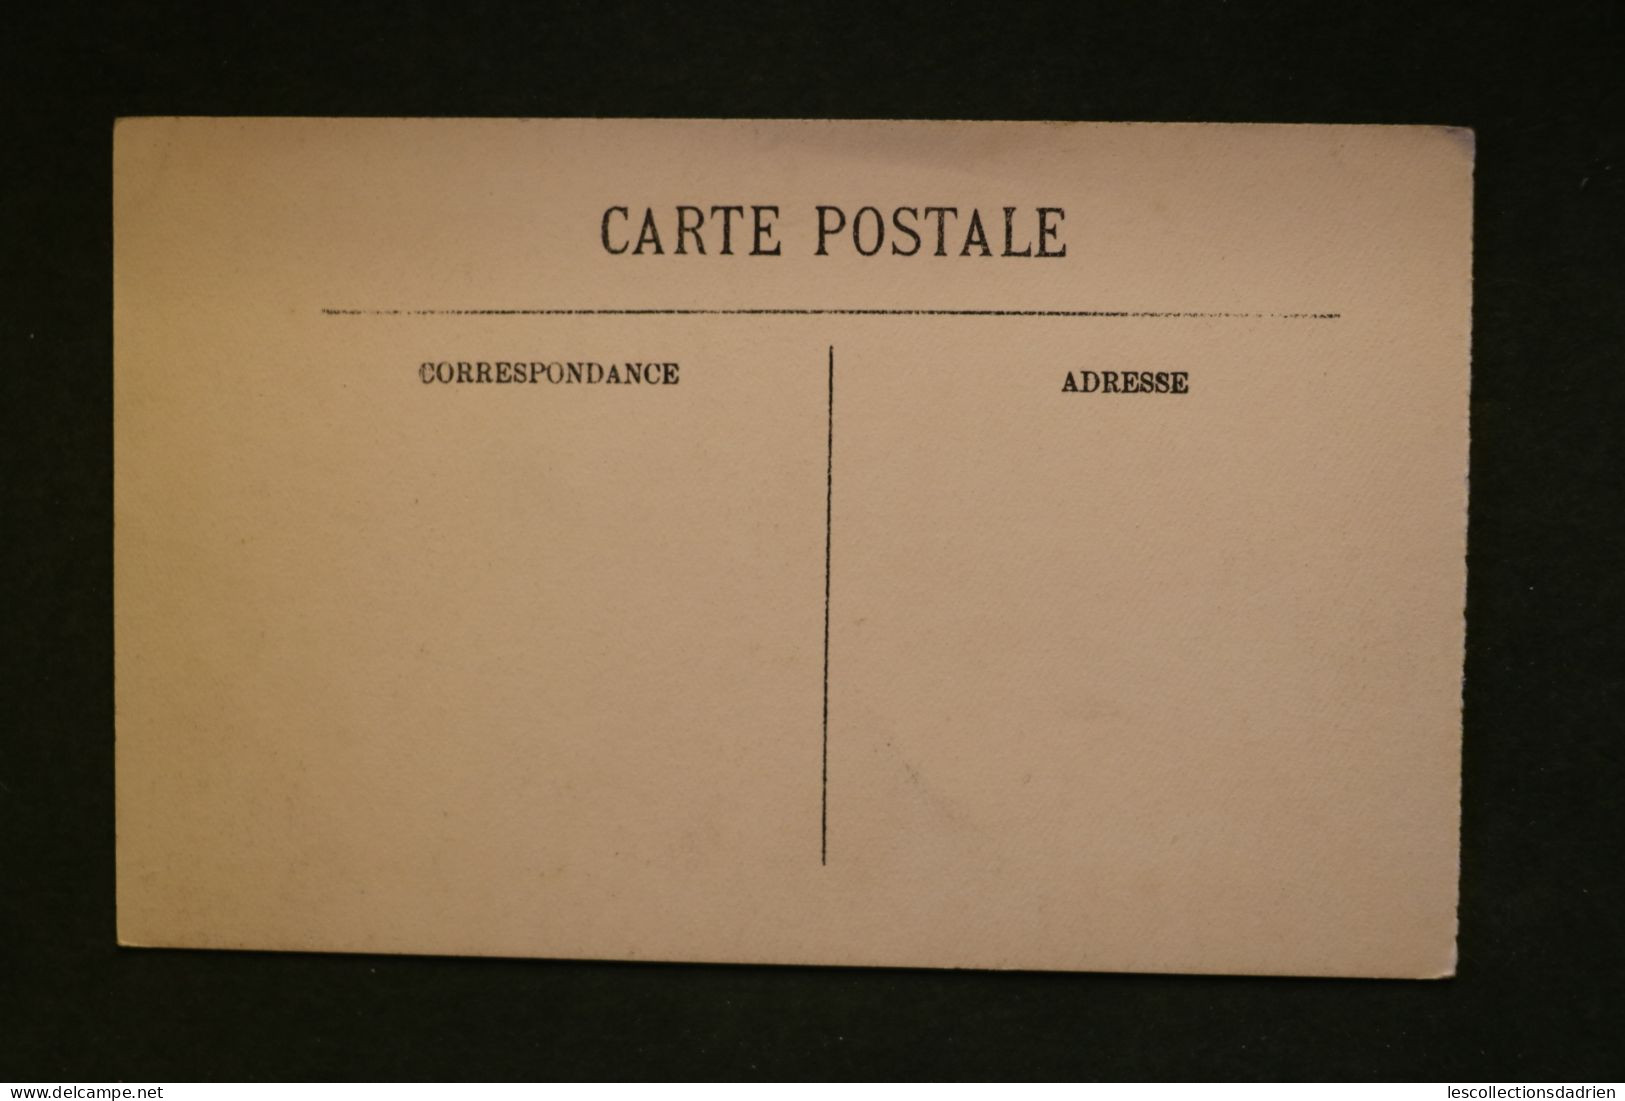 Carte postale - Lisieux - la cour de Charlotte Corday selecta